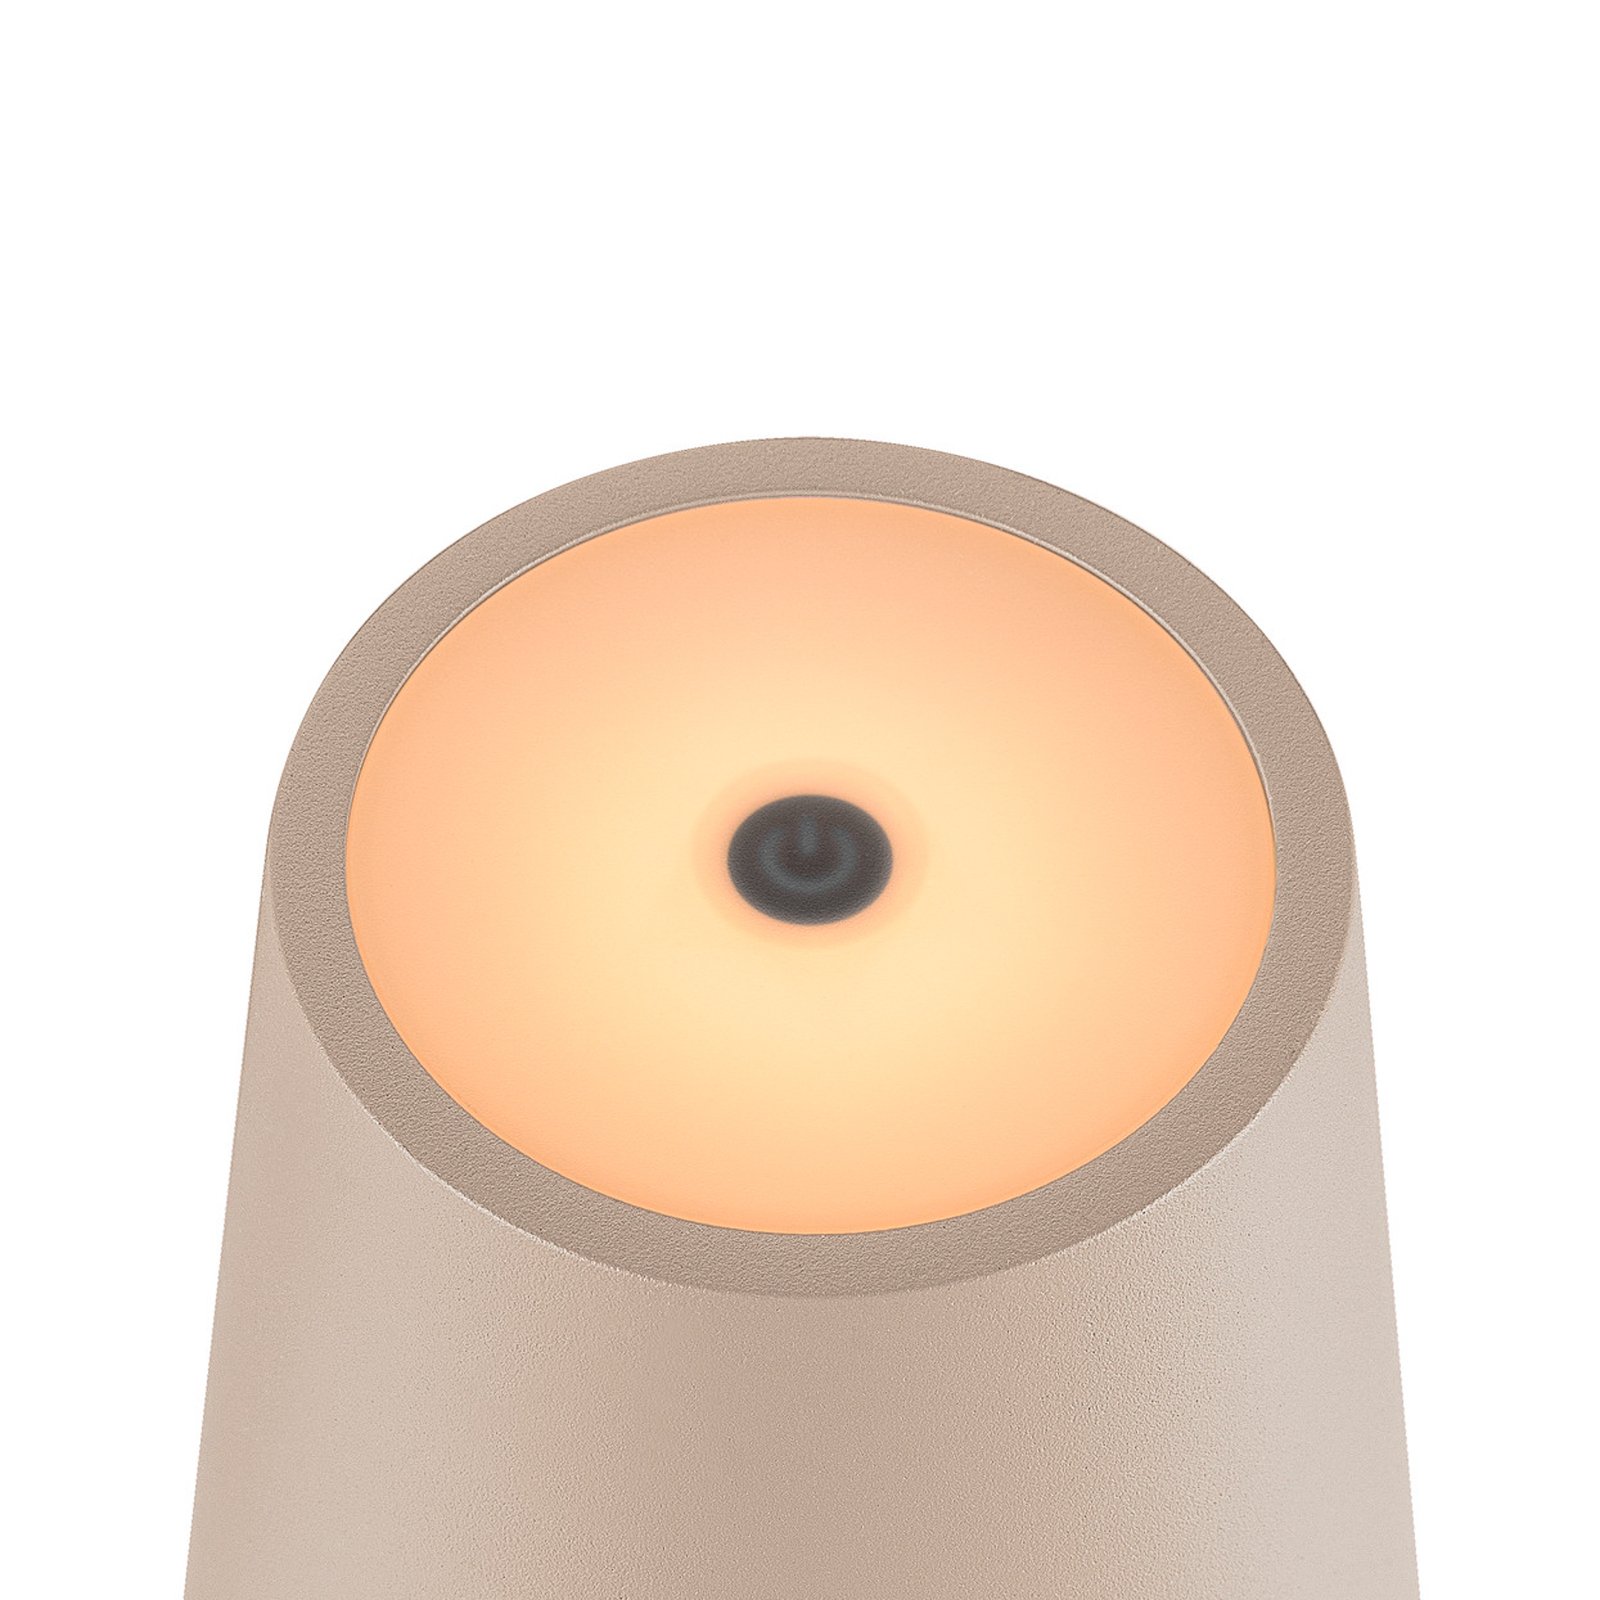 SLV LED-Akkulampe Vinolina Two, beige, Alu, Ø 11 cm, IP65